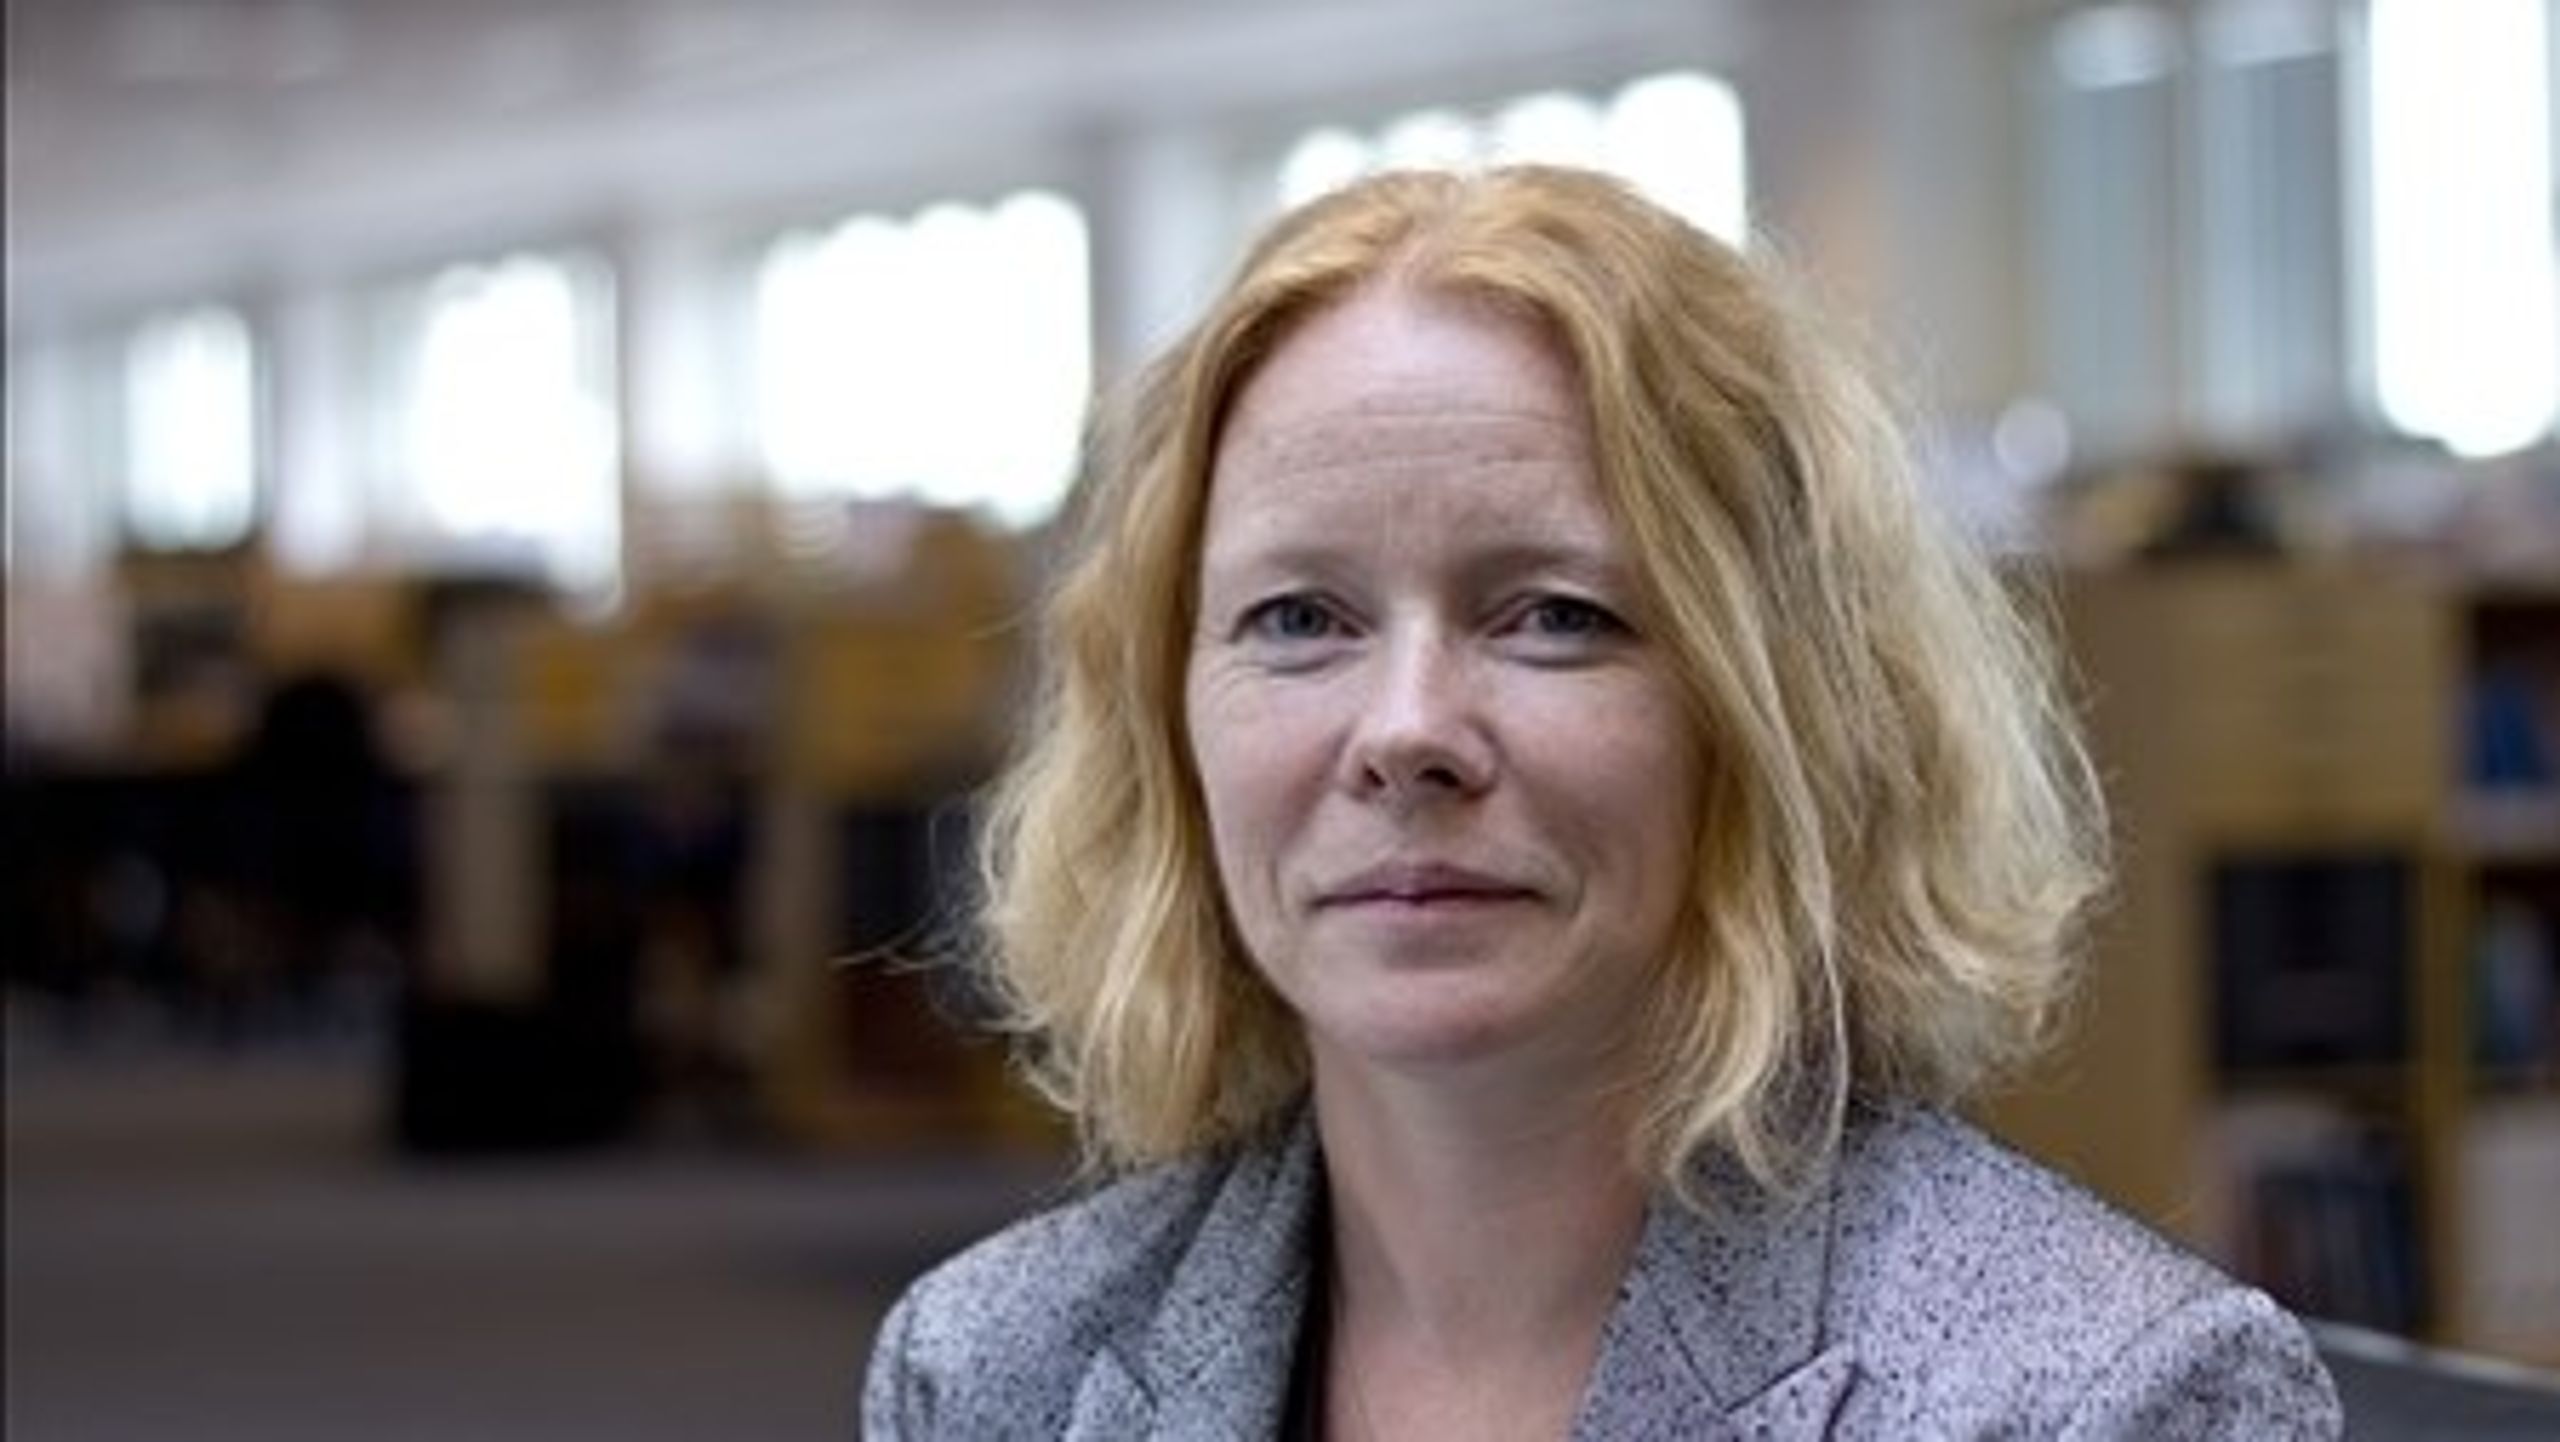 Der er behov for et opgør med det ensidige negative fokus på de negative sider af kemi. Det mener Karin Klitgaard, miljøpolitisk chef i DI.